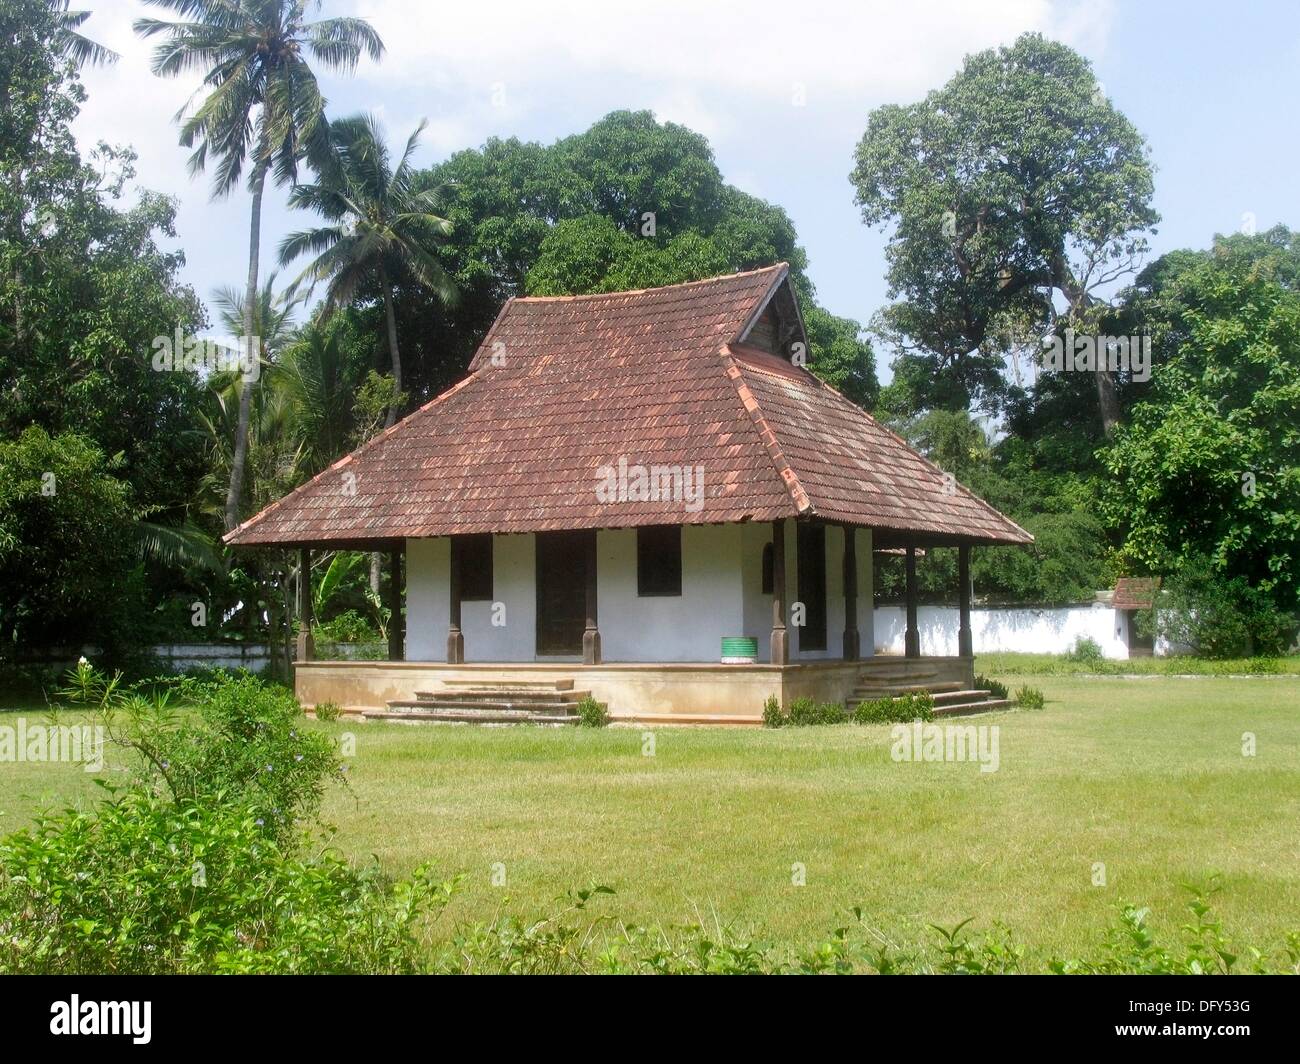 Outer side of Kuthiramalika palace, Trivandrum, Kerala, India Stock Photo